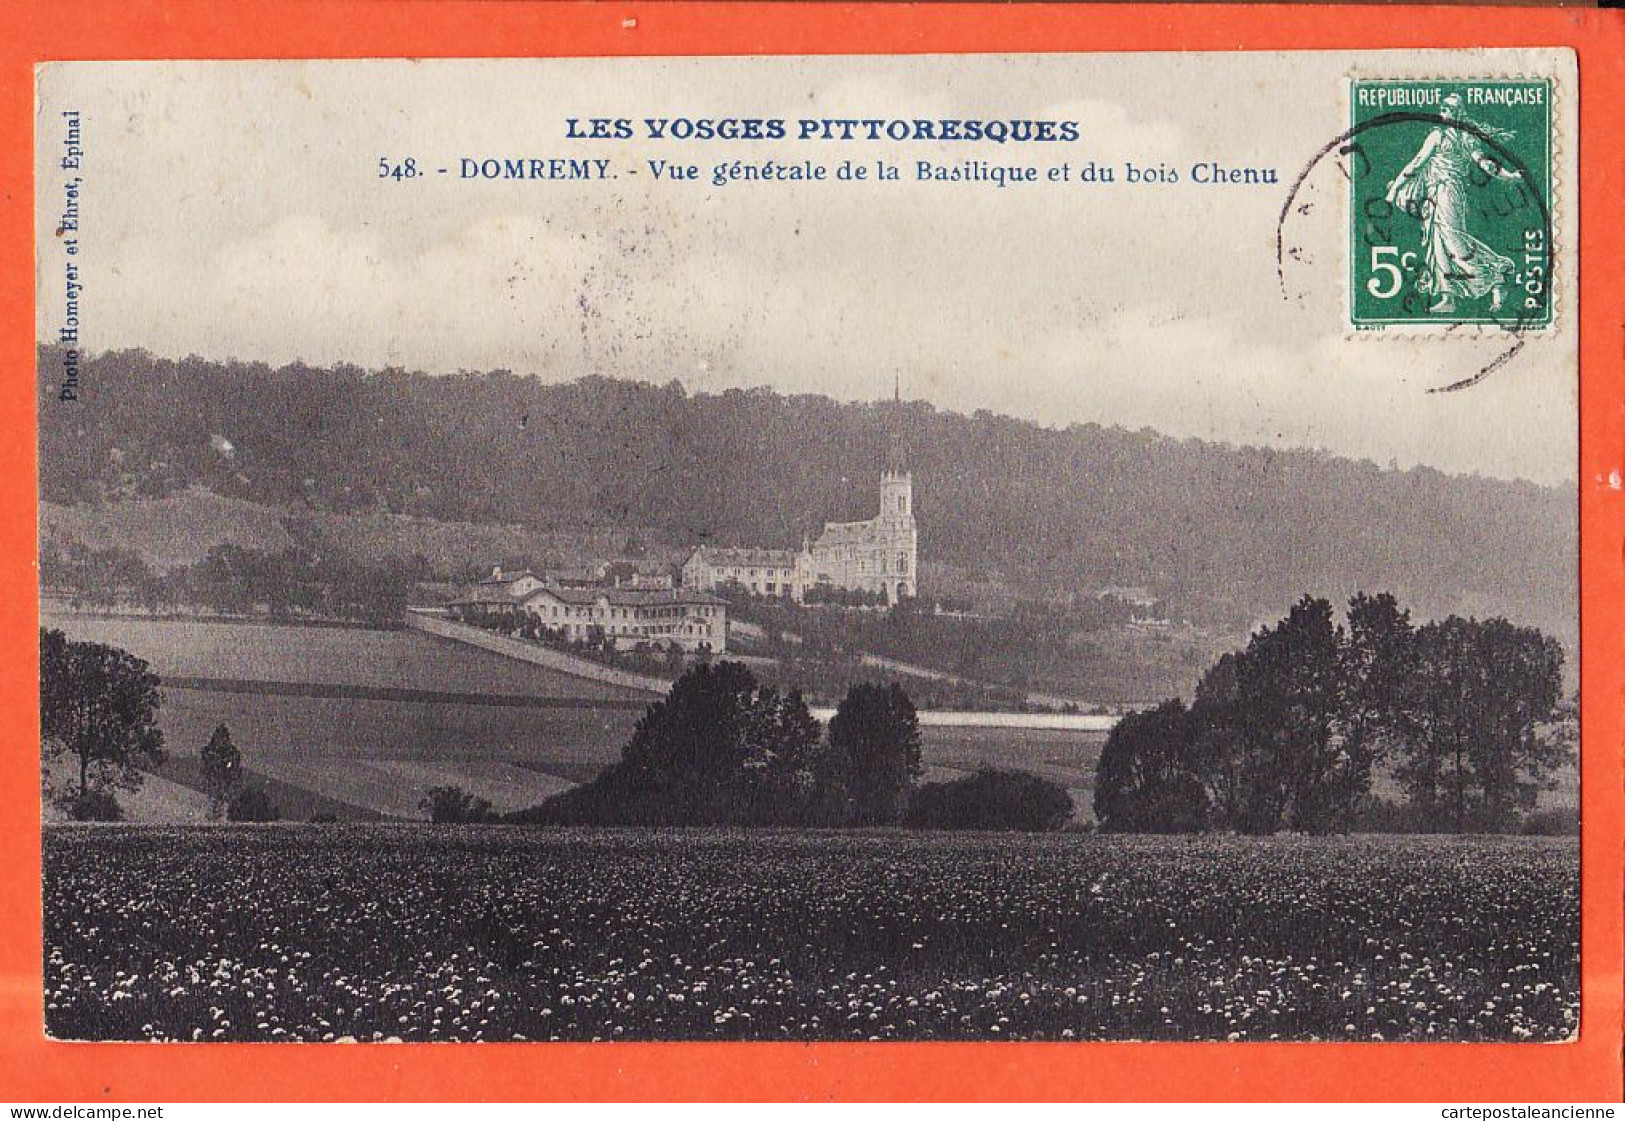 06077 / DOMREMY 88-Vosges Vue Generale Basilique Du Bois CHENU 1910s à GERARD Pagny-Photo HOMEYER EHRET Epinal - Domremy La Pucelle